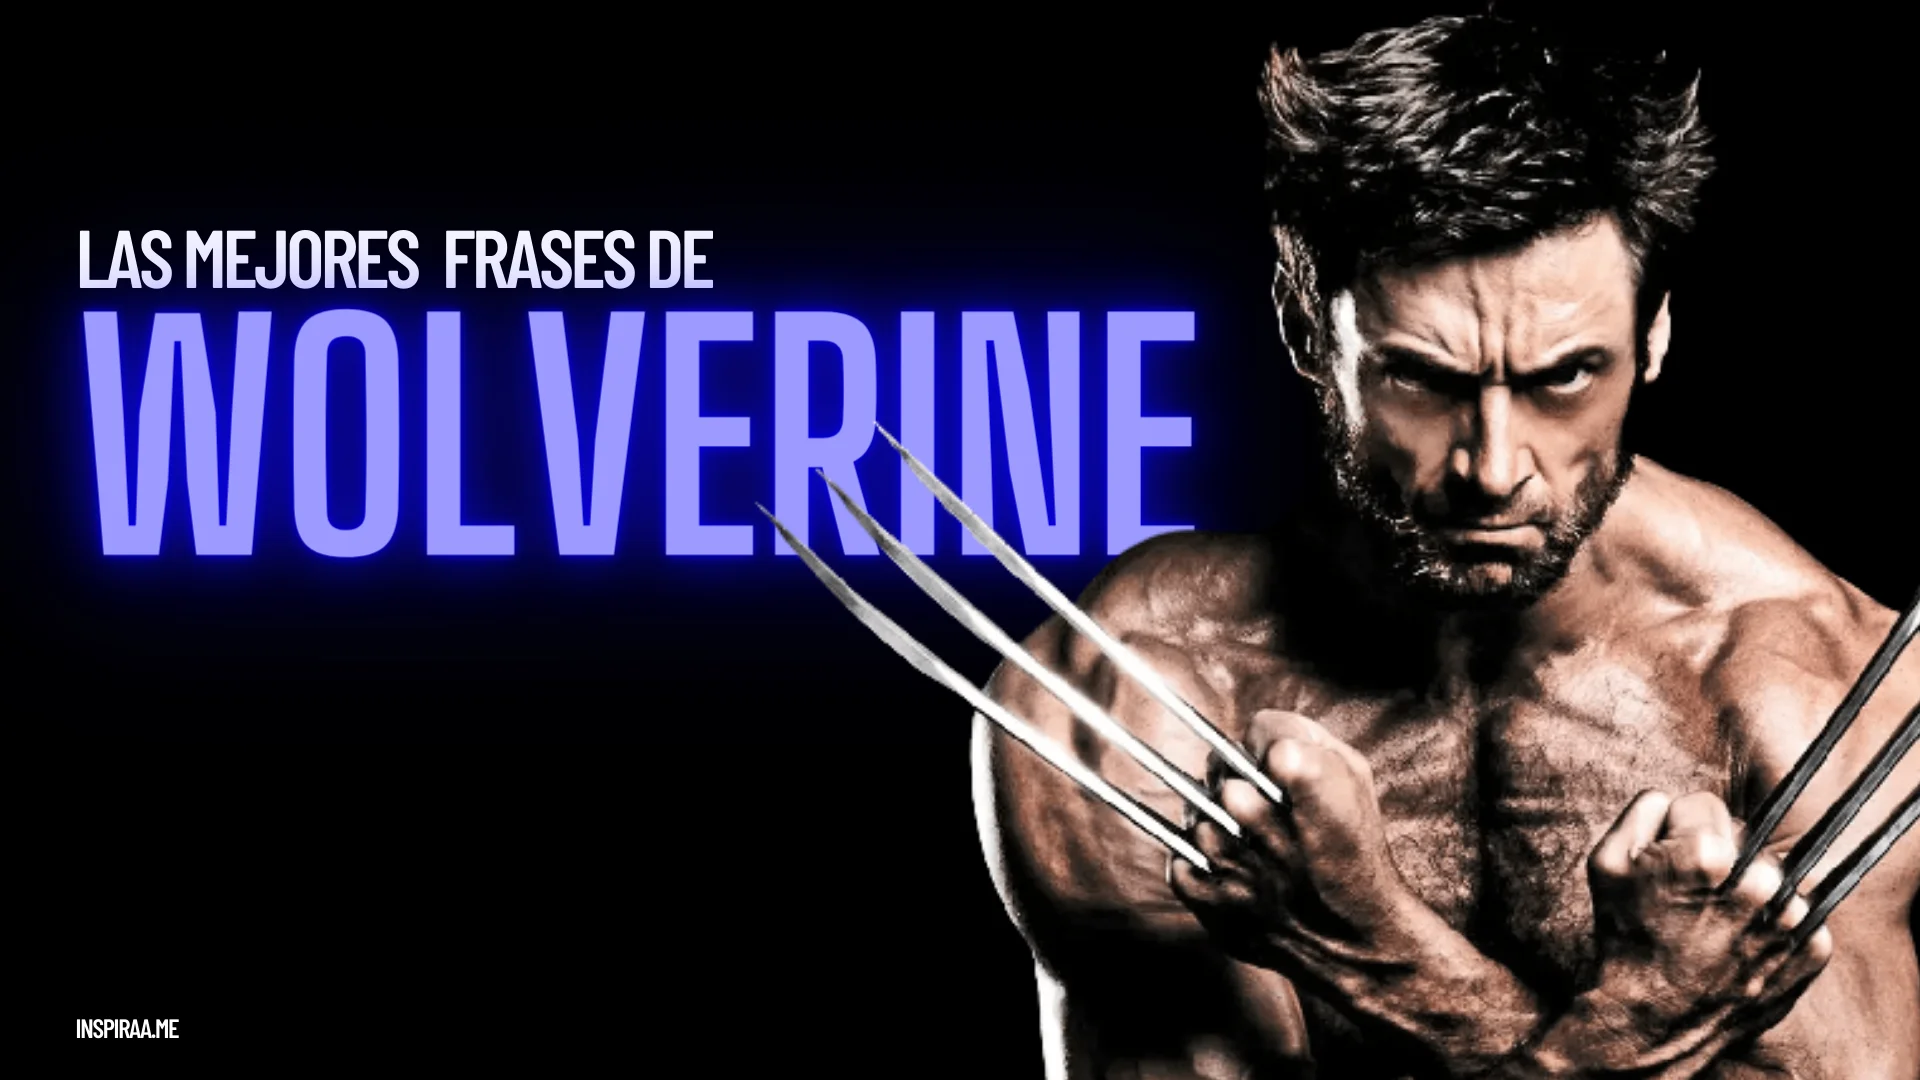 Las mejores frases de Wolverine sobre la vida el amor y la inmortalidad